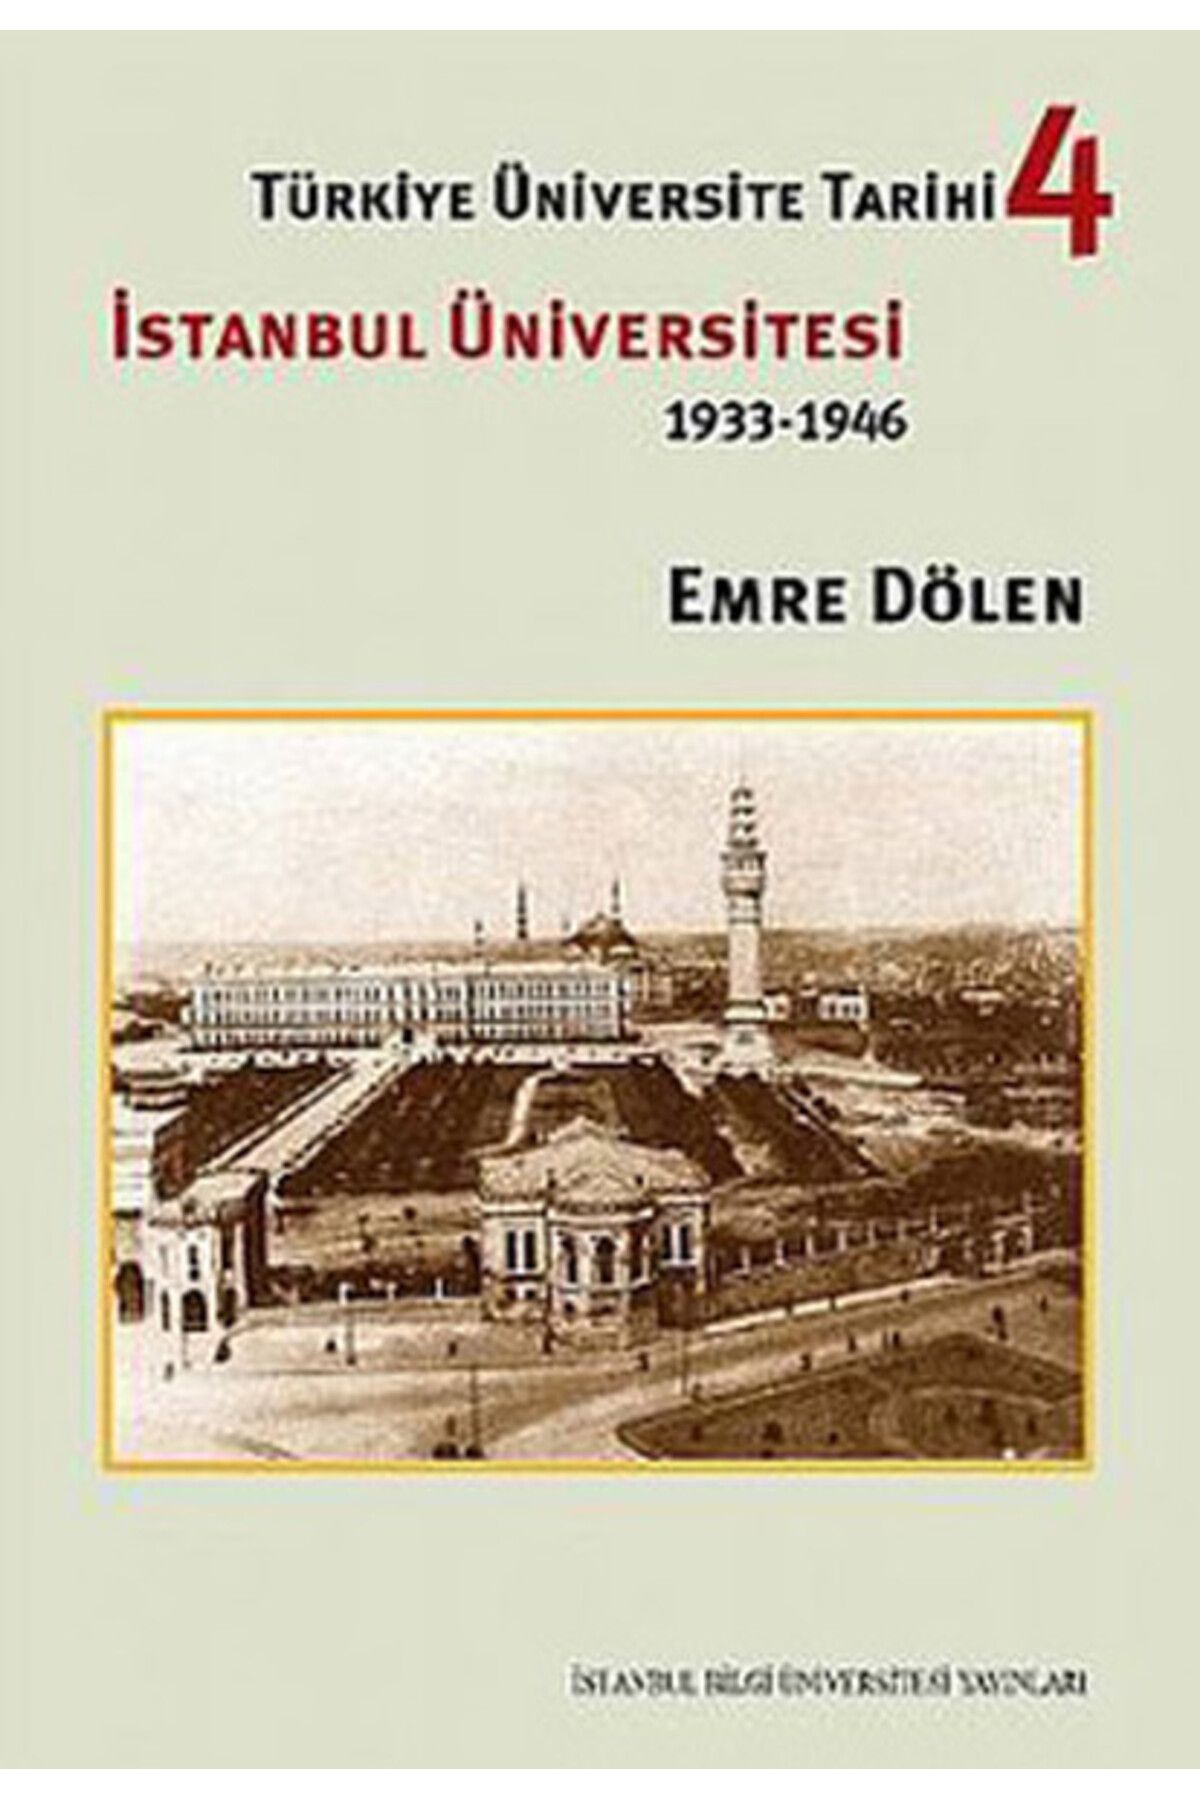 İstanbul Bilgi Üniversitesi Yayınları Türkiye Üniversite Tarihi-4 İstanbul Üniversitesi (1933-1946)